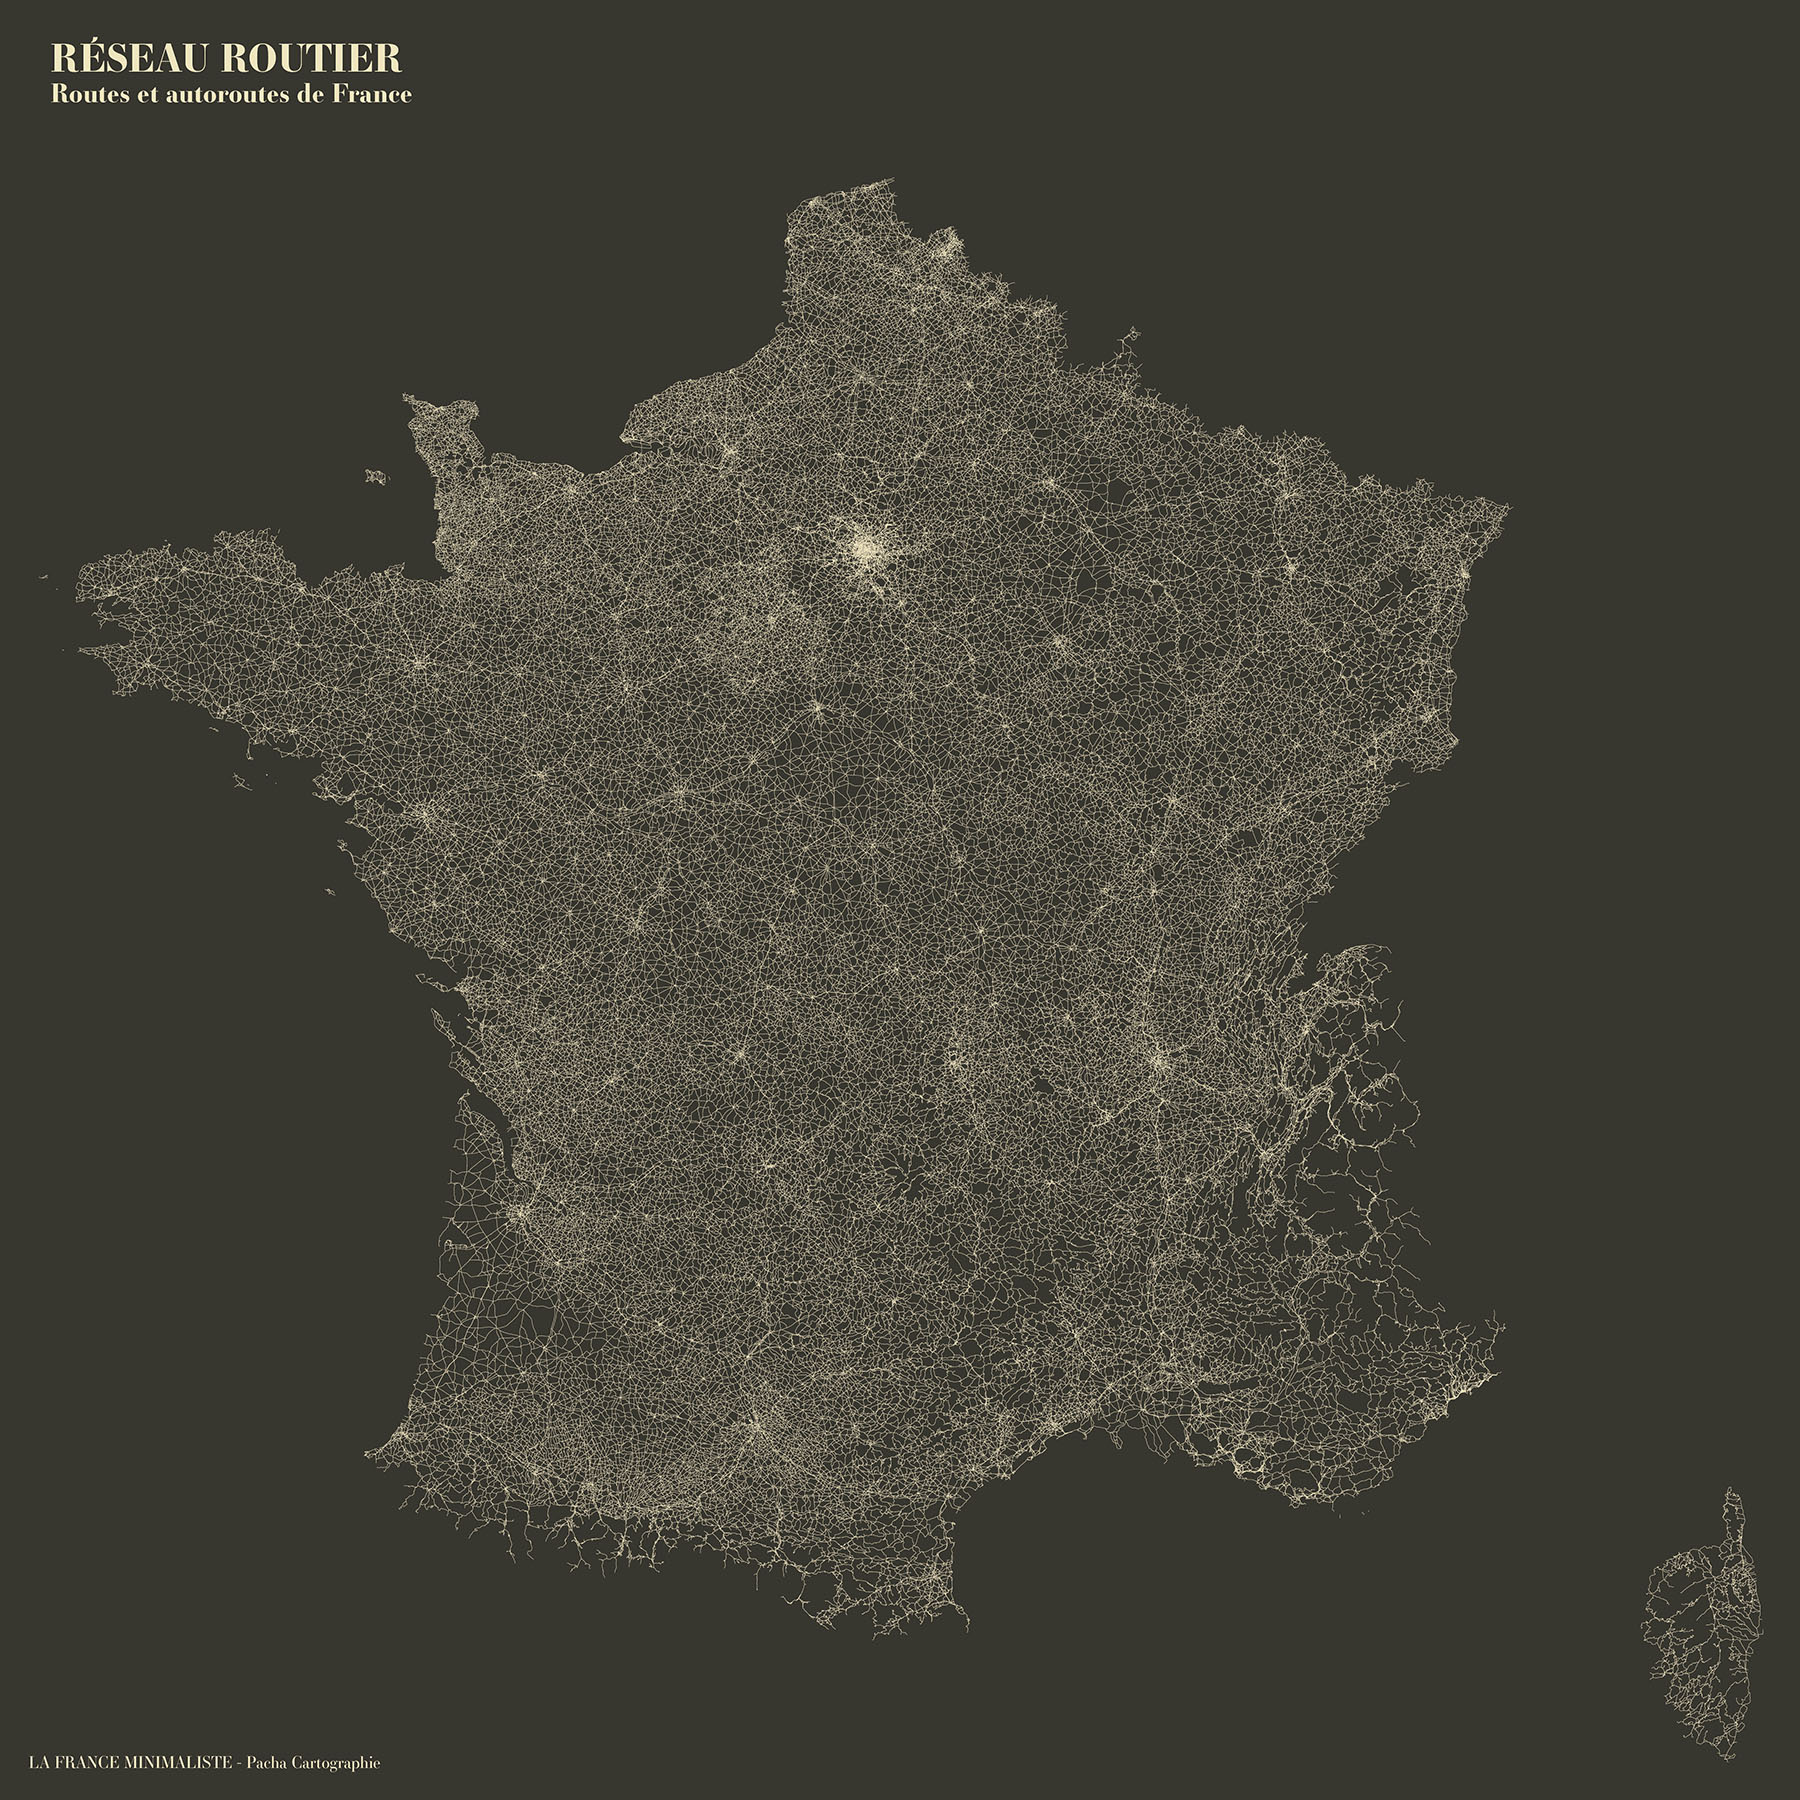 La France minimaliste - Routes - Guillaume Sciaux - Cartographe professionnel